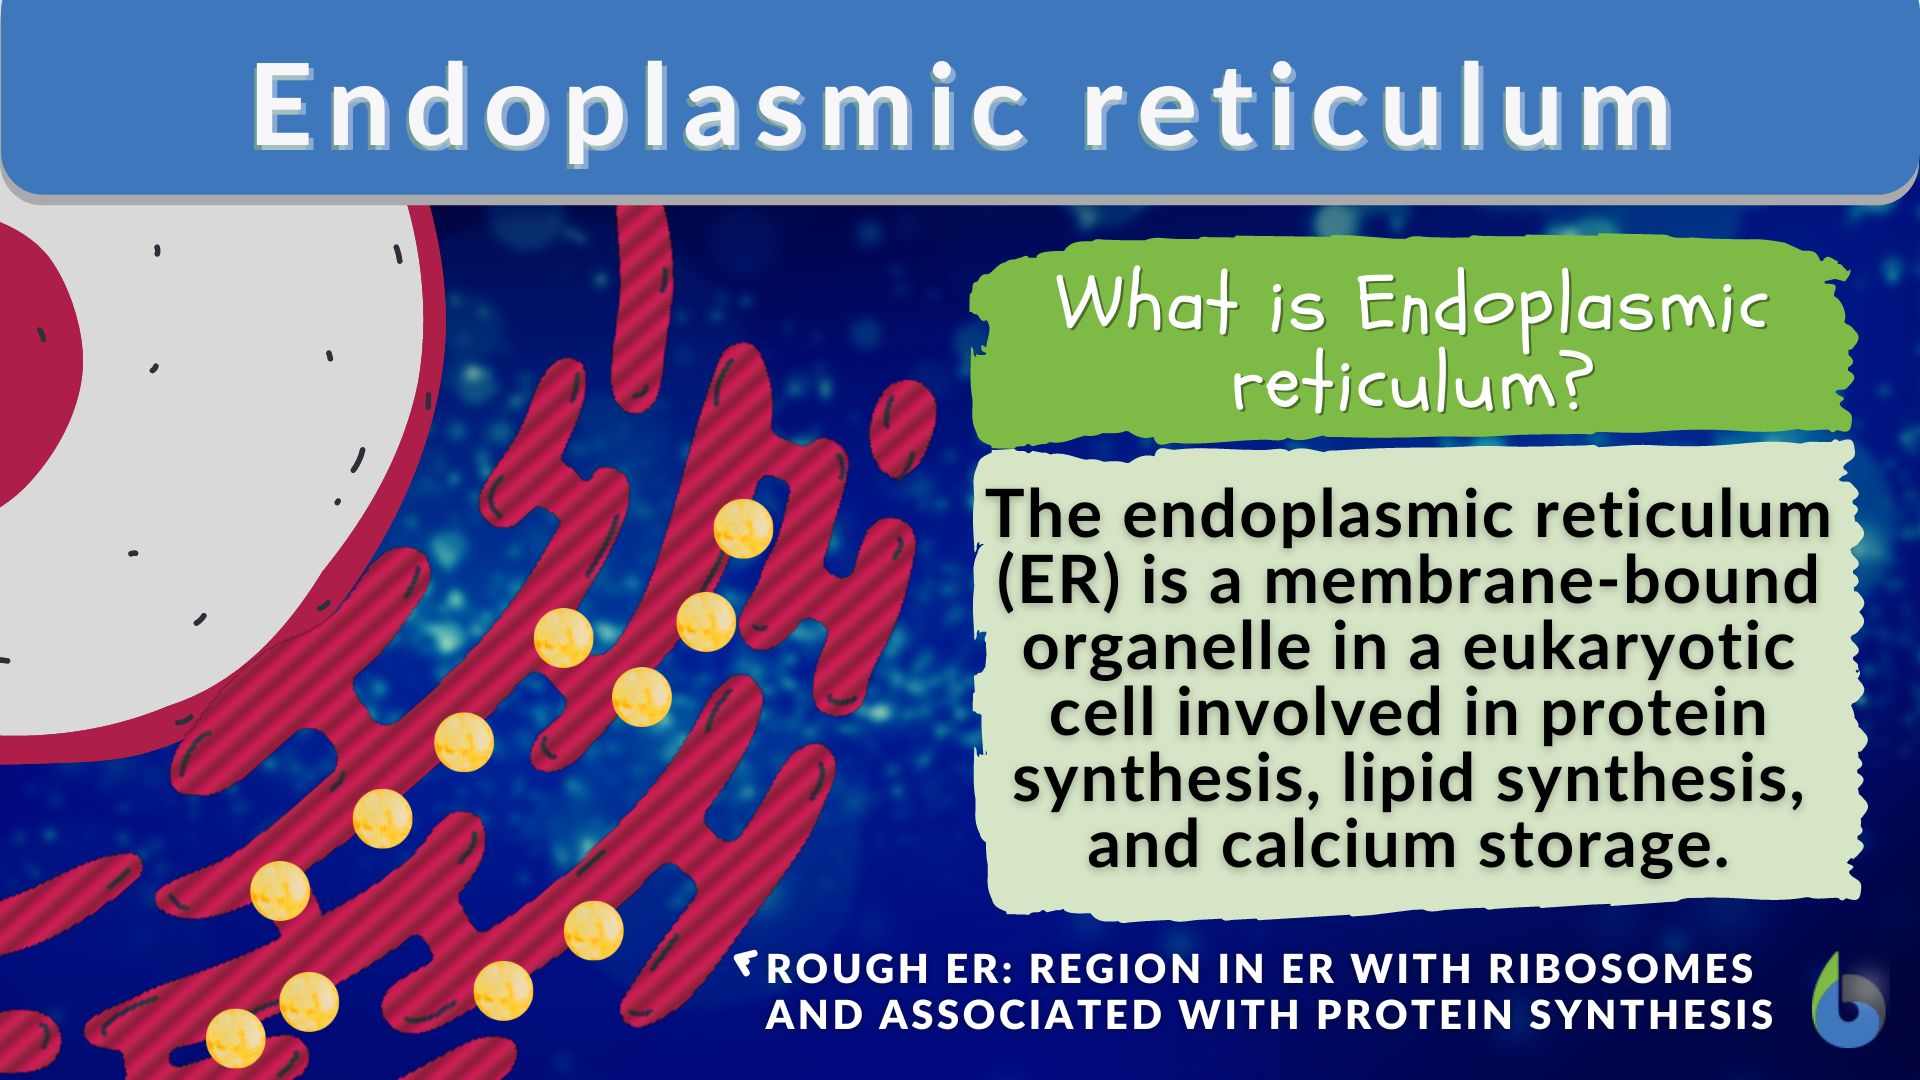 endoplasmic reticulum function animal cell